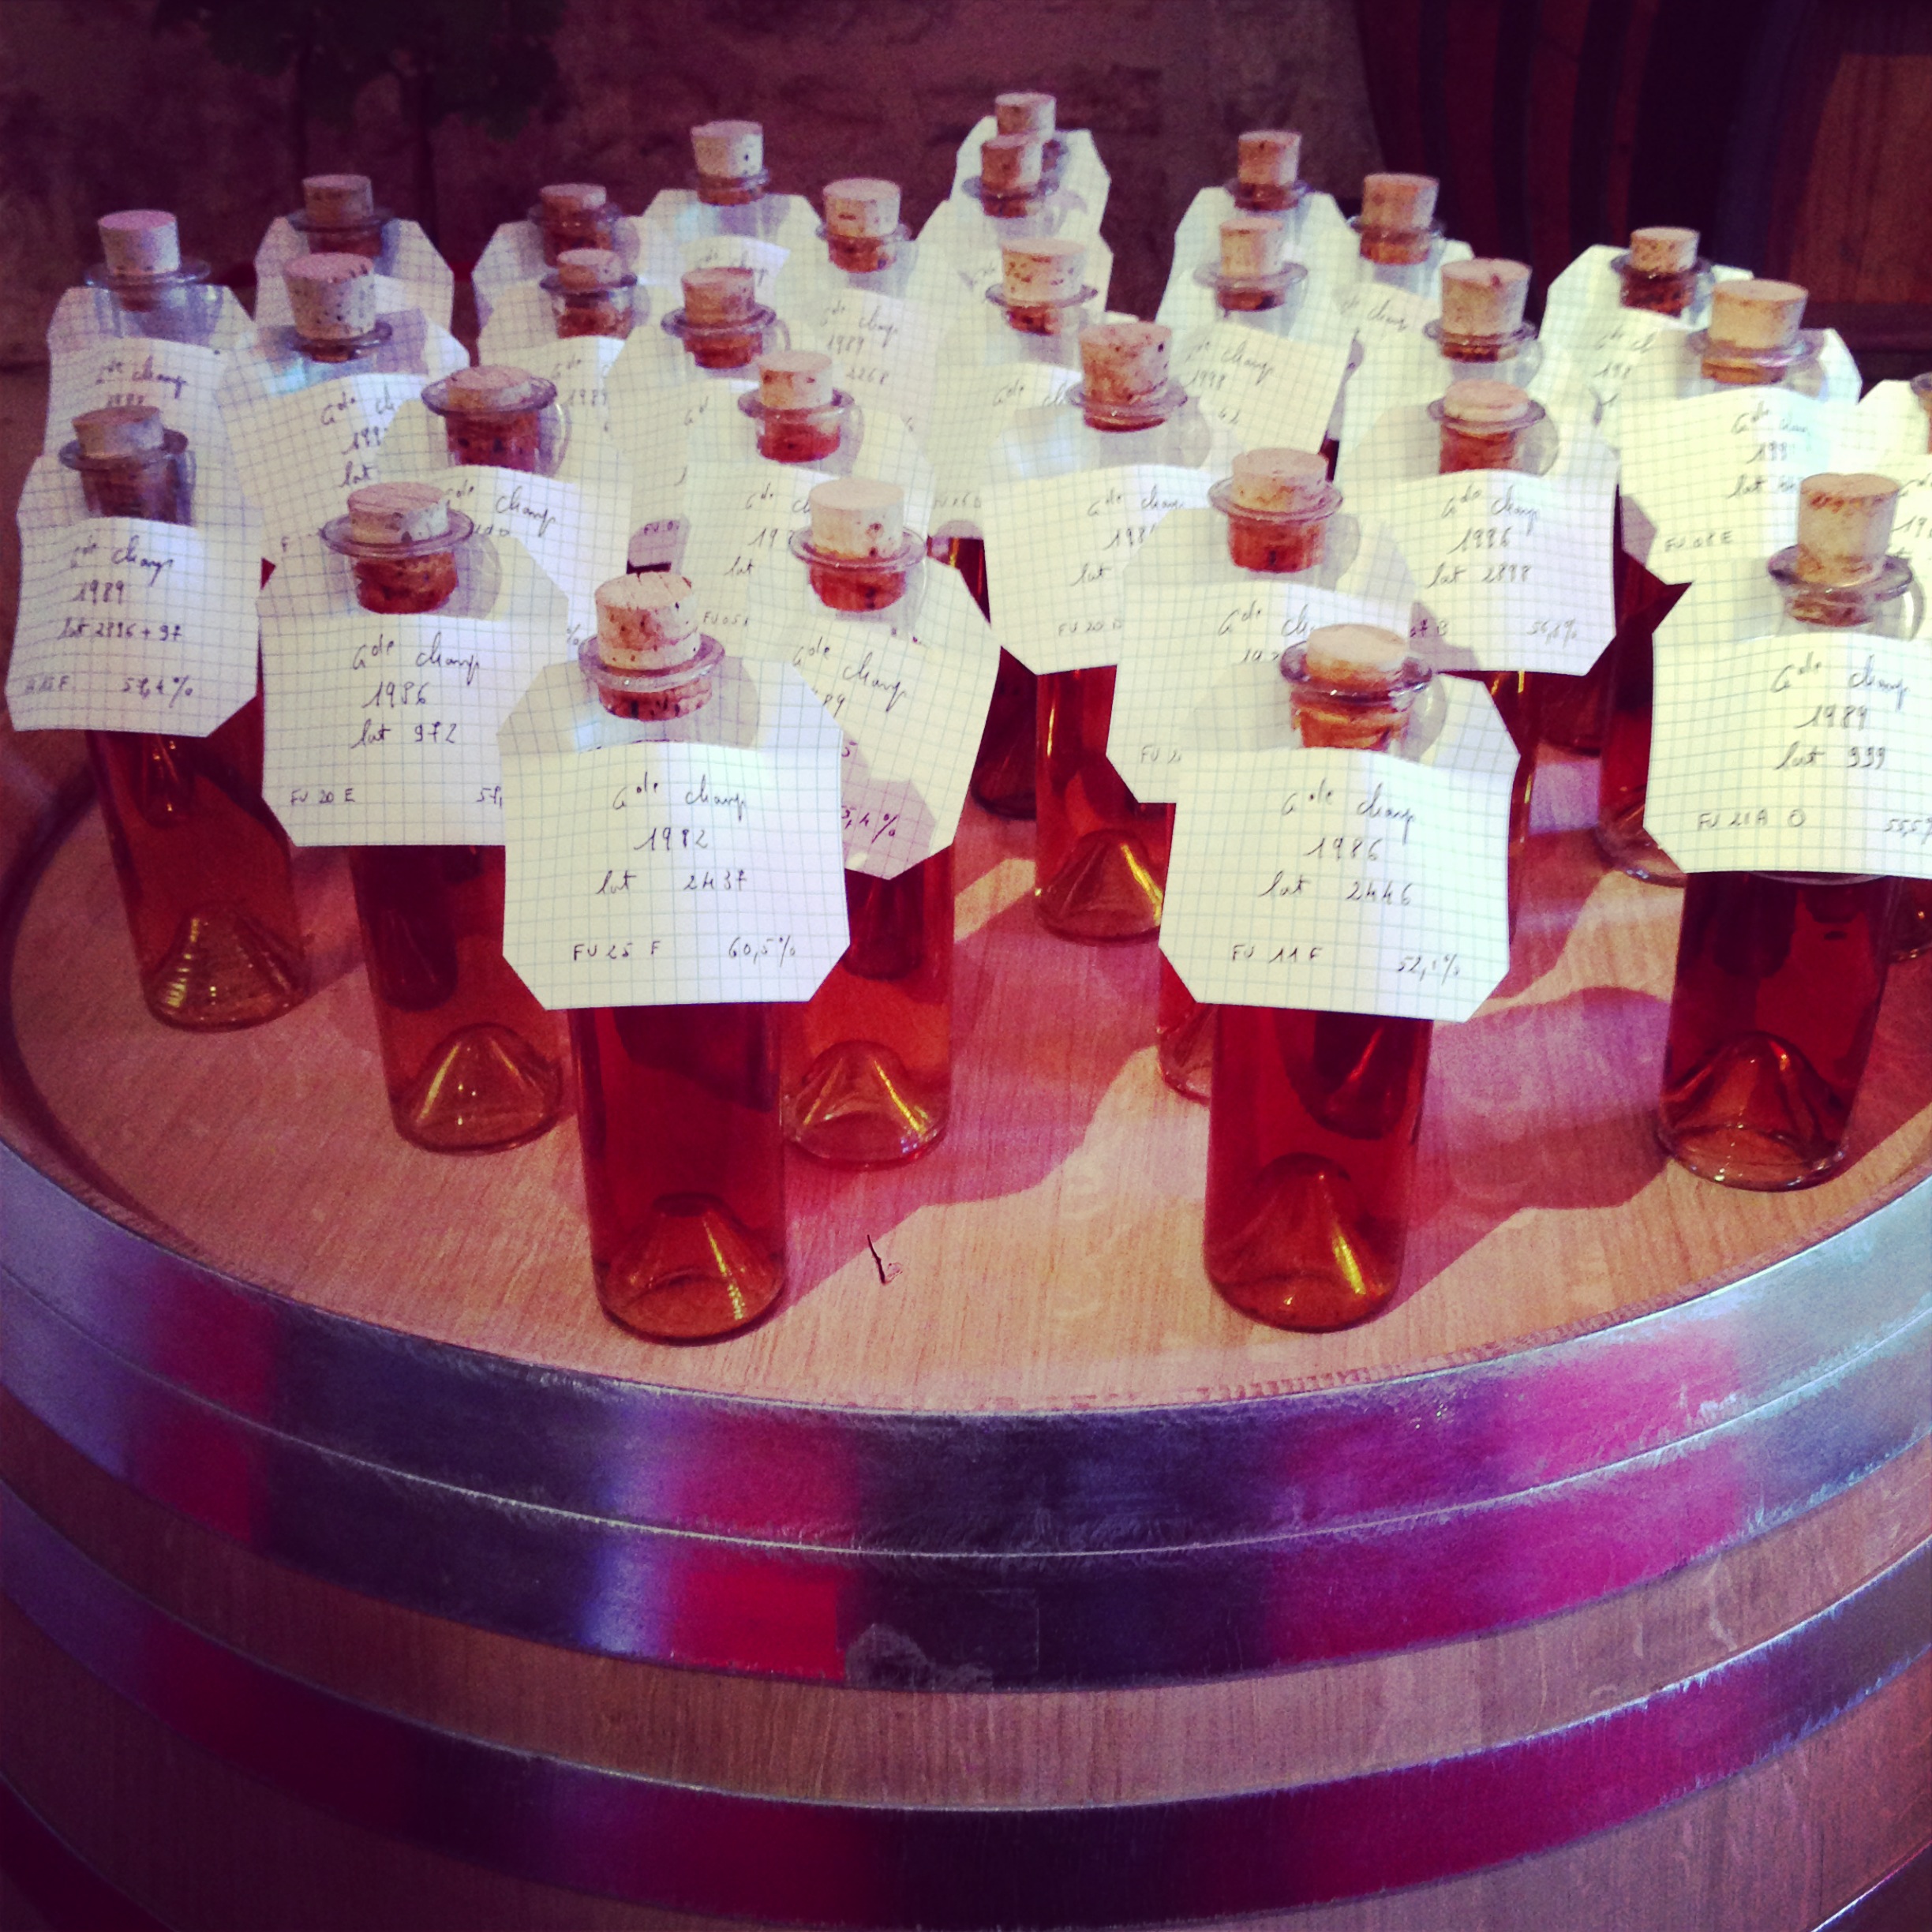 Cognac bottles